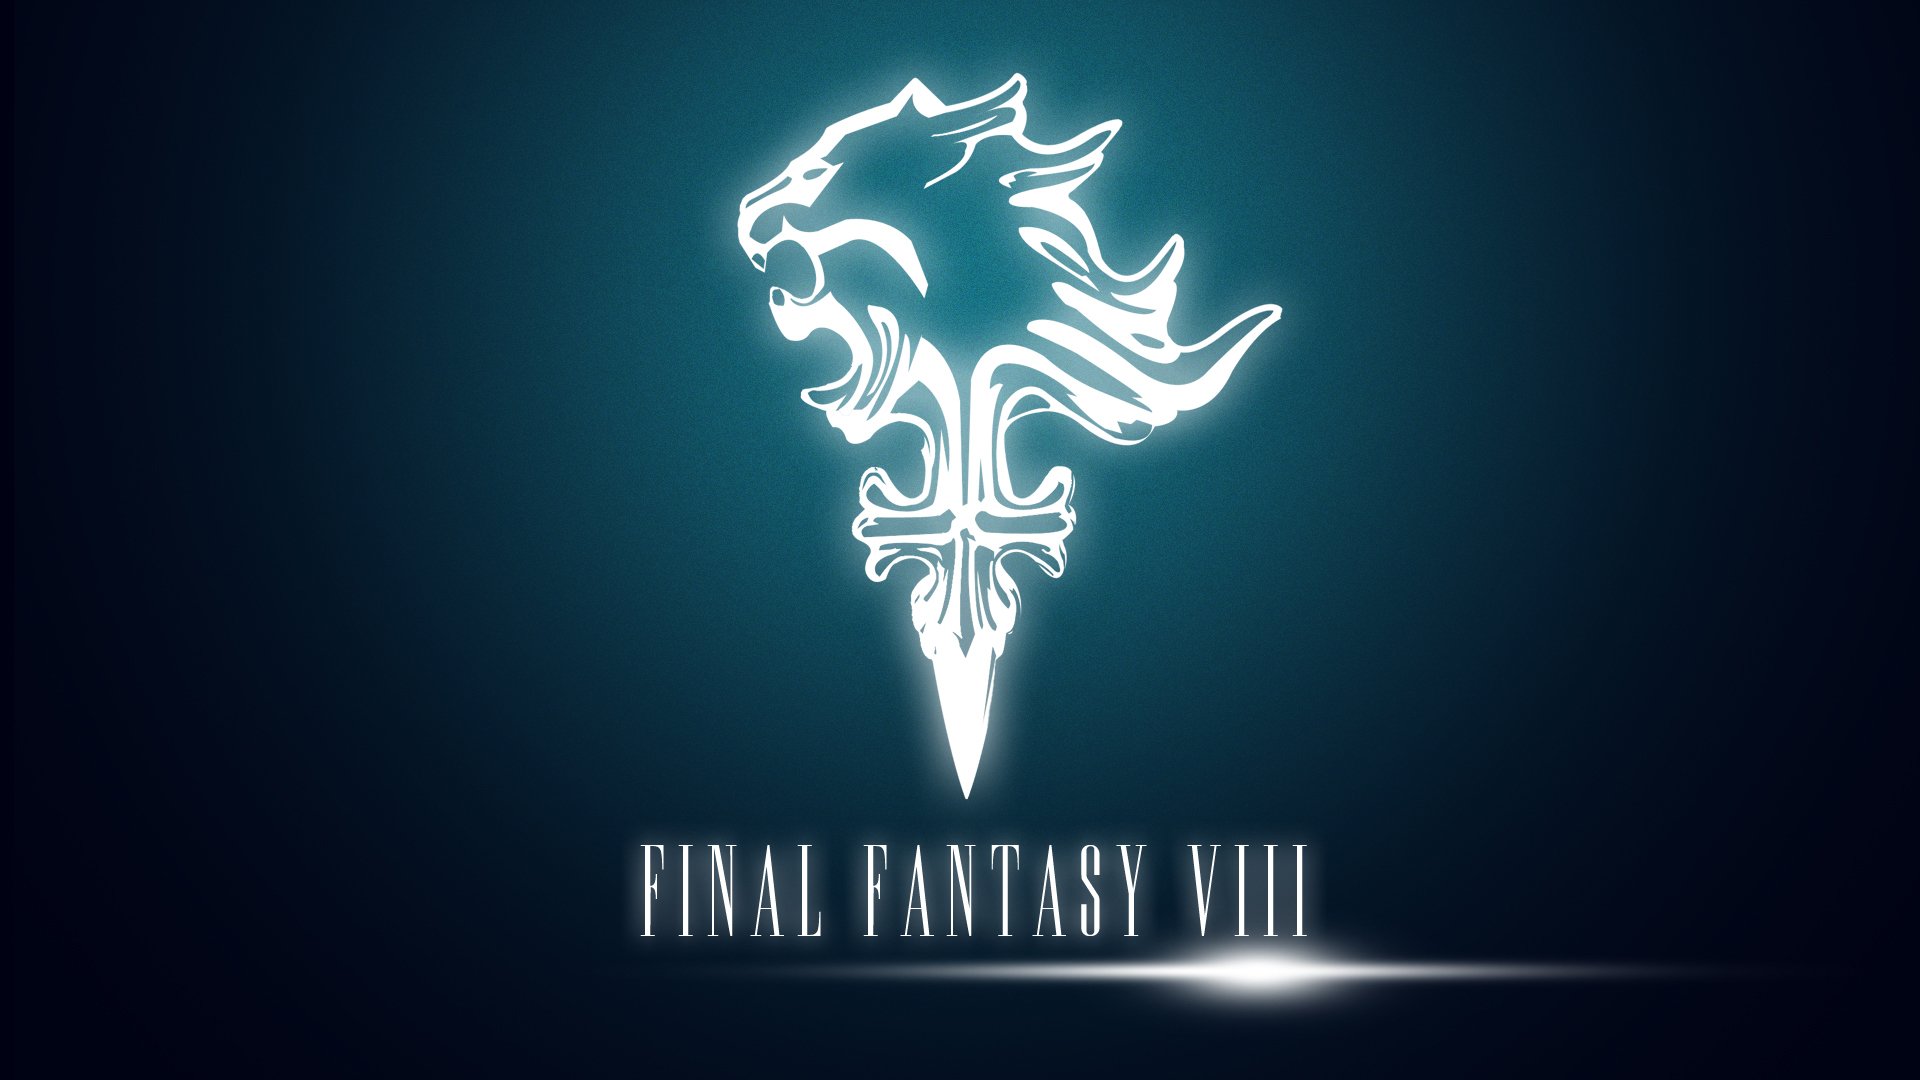 Nếu bạn là fan hâm mộ của Final Fantasy VIII, hãy tải ngay hình nền này về với chủ đề game đầy huyền hoặc. Hứa hẹn sẽ khiến con tim của bạn đập khát khao hơn bao giờ hết!